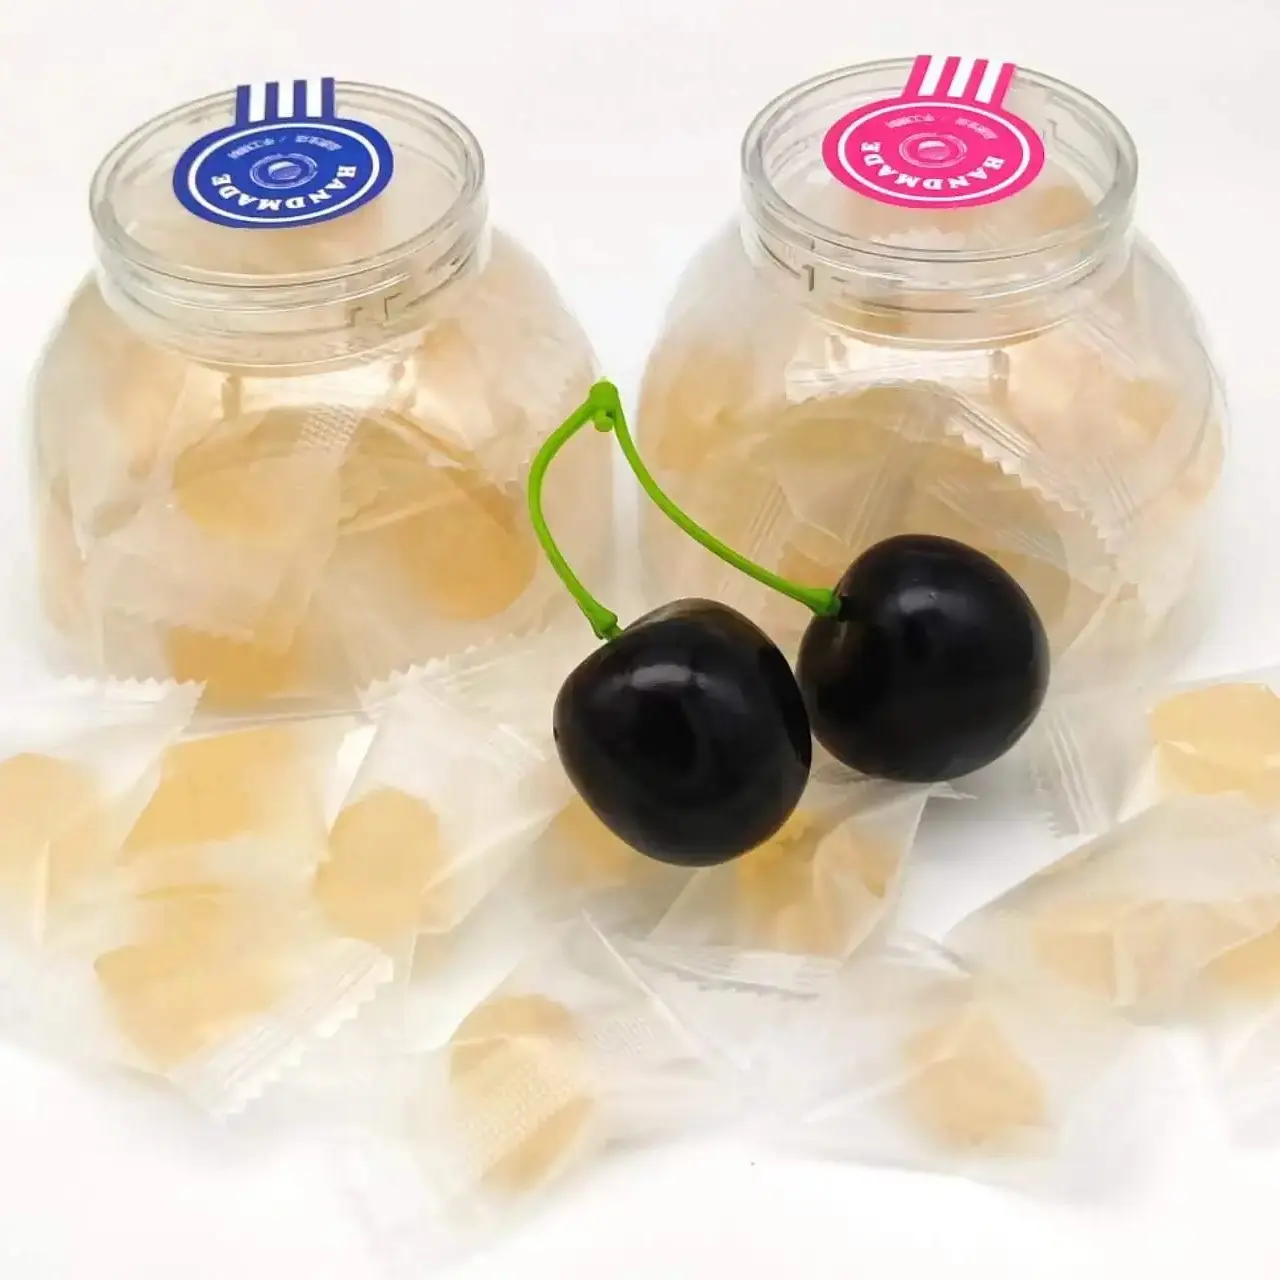 Gdo şekersiz glutensiz Stevia sakızlı meyveli aromalı parça şekli OEM servisi şişede paketlenmiştir